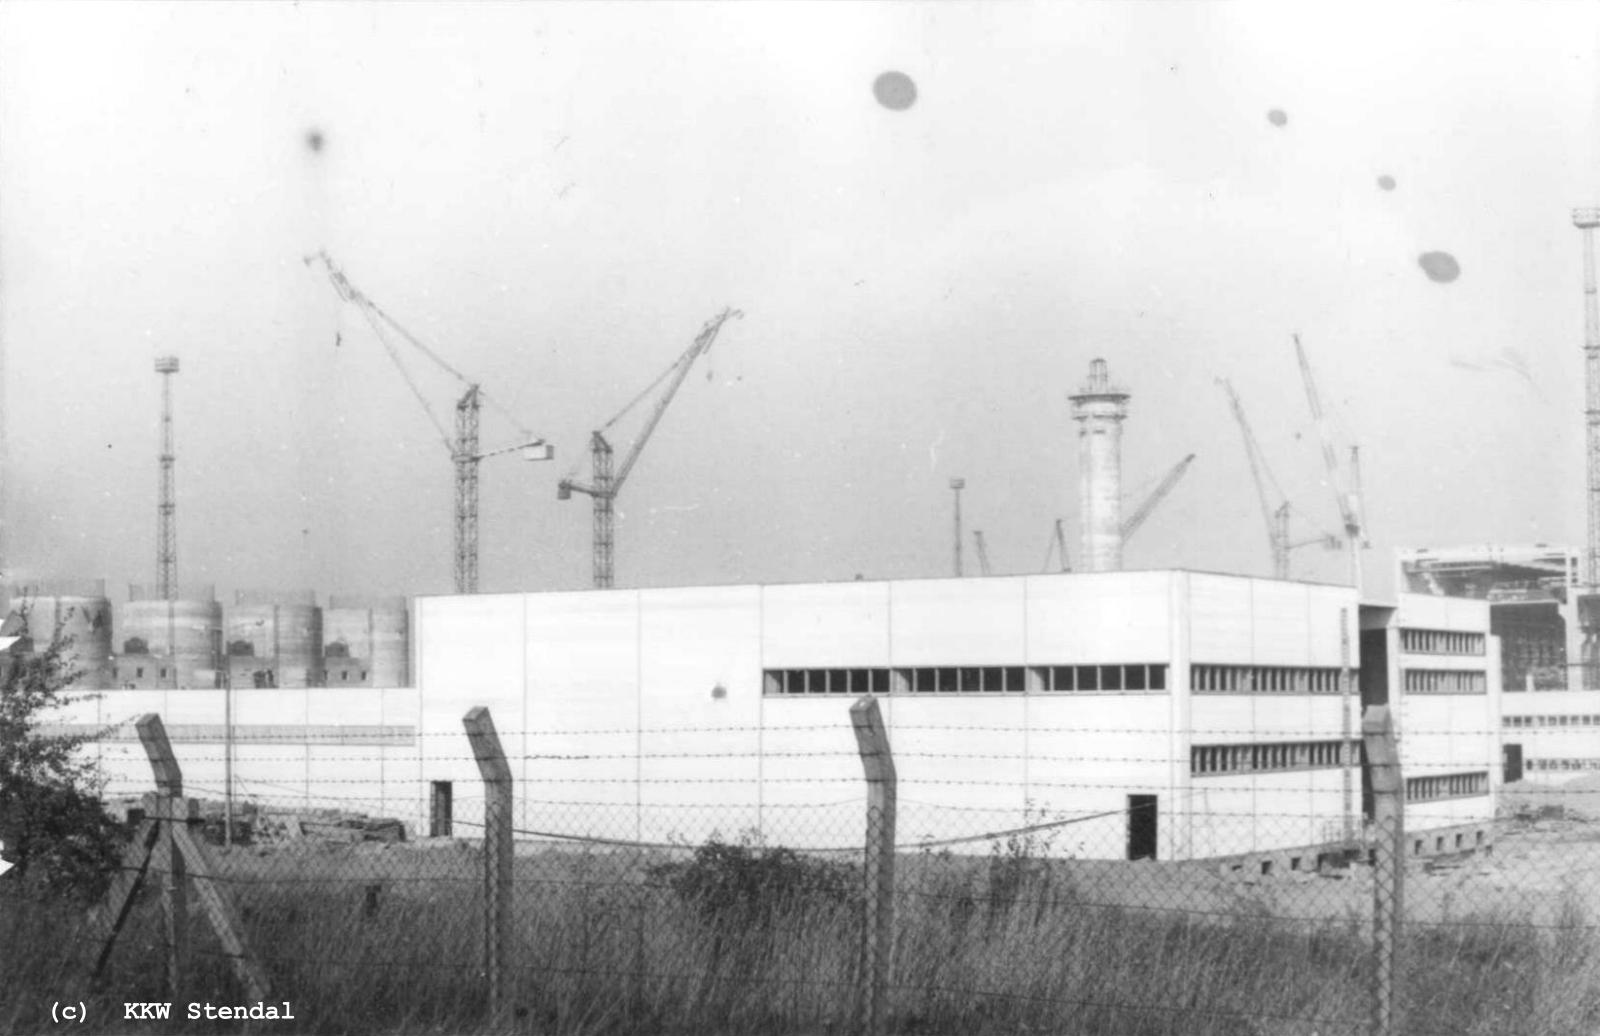  AKW Stendal, Baustelle 1988,ZSWA Zusatzspeisewasseraufbereitung  